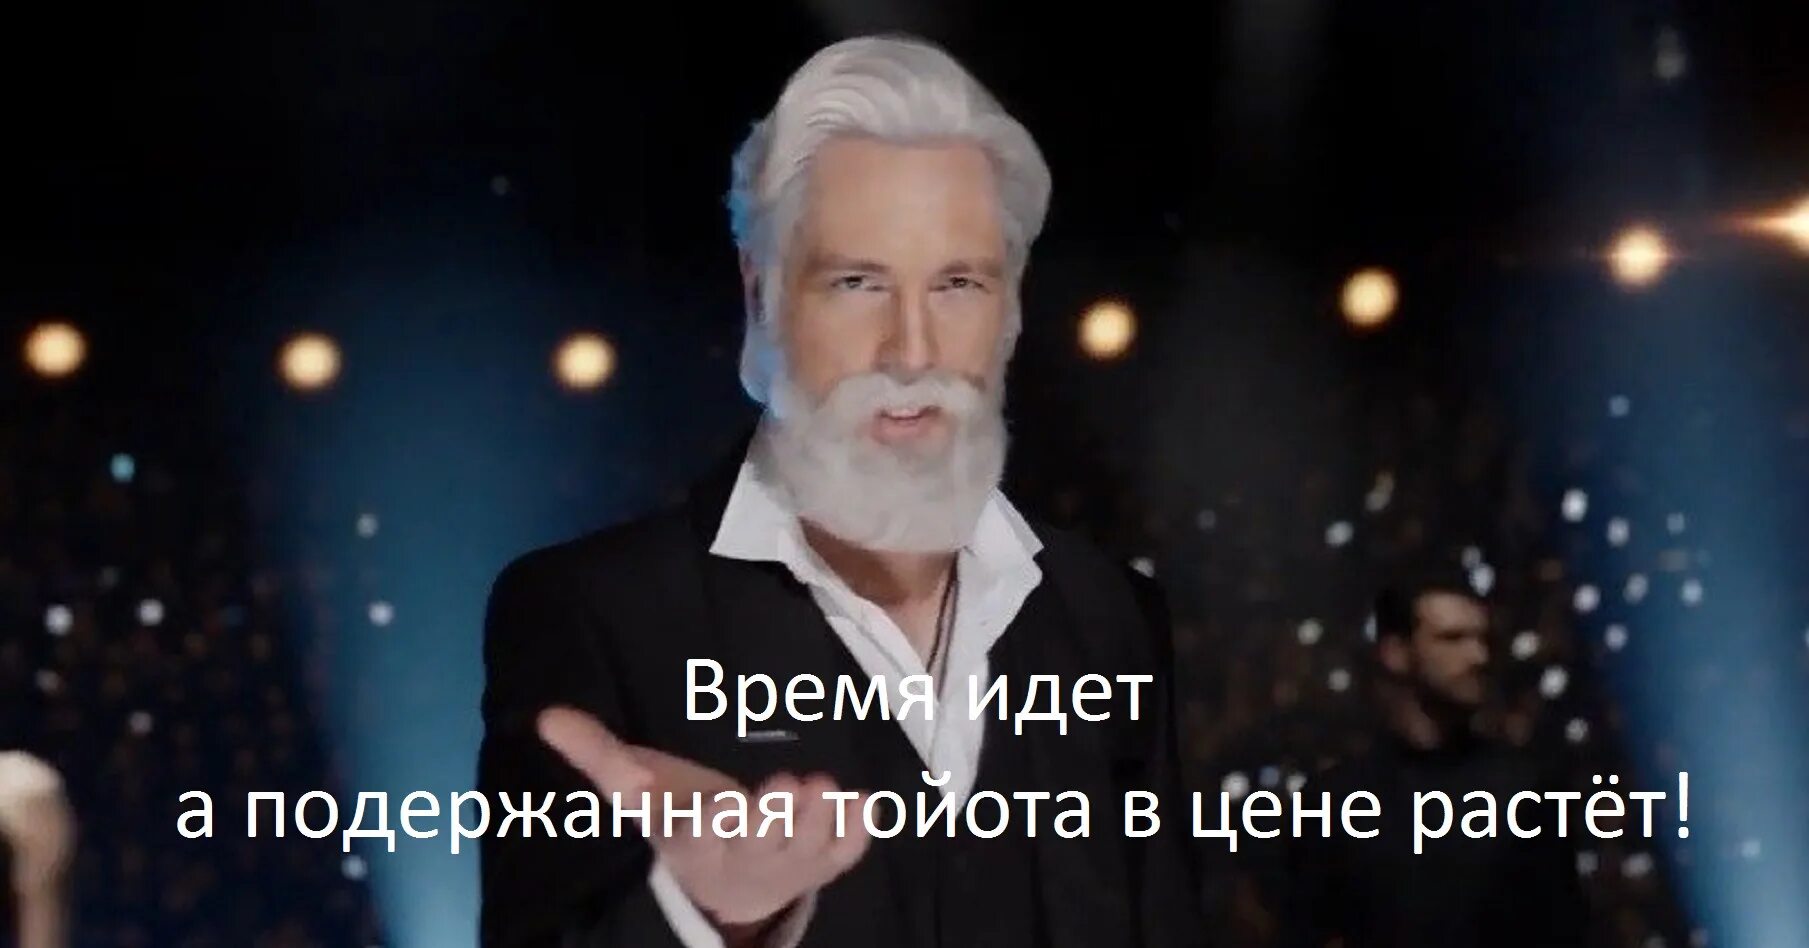 Реклама теле2 кто снимается с бородой. Дед из рекламы теле2 актер.